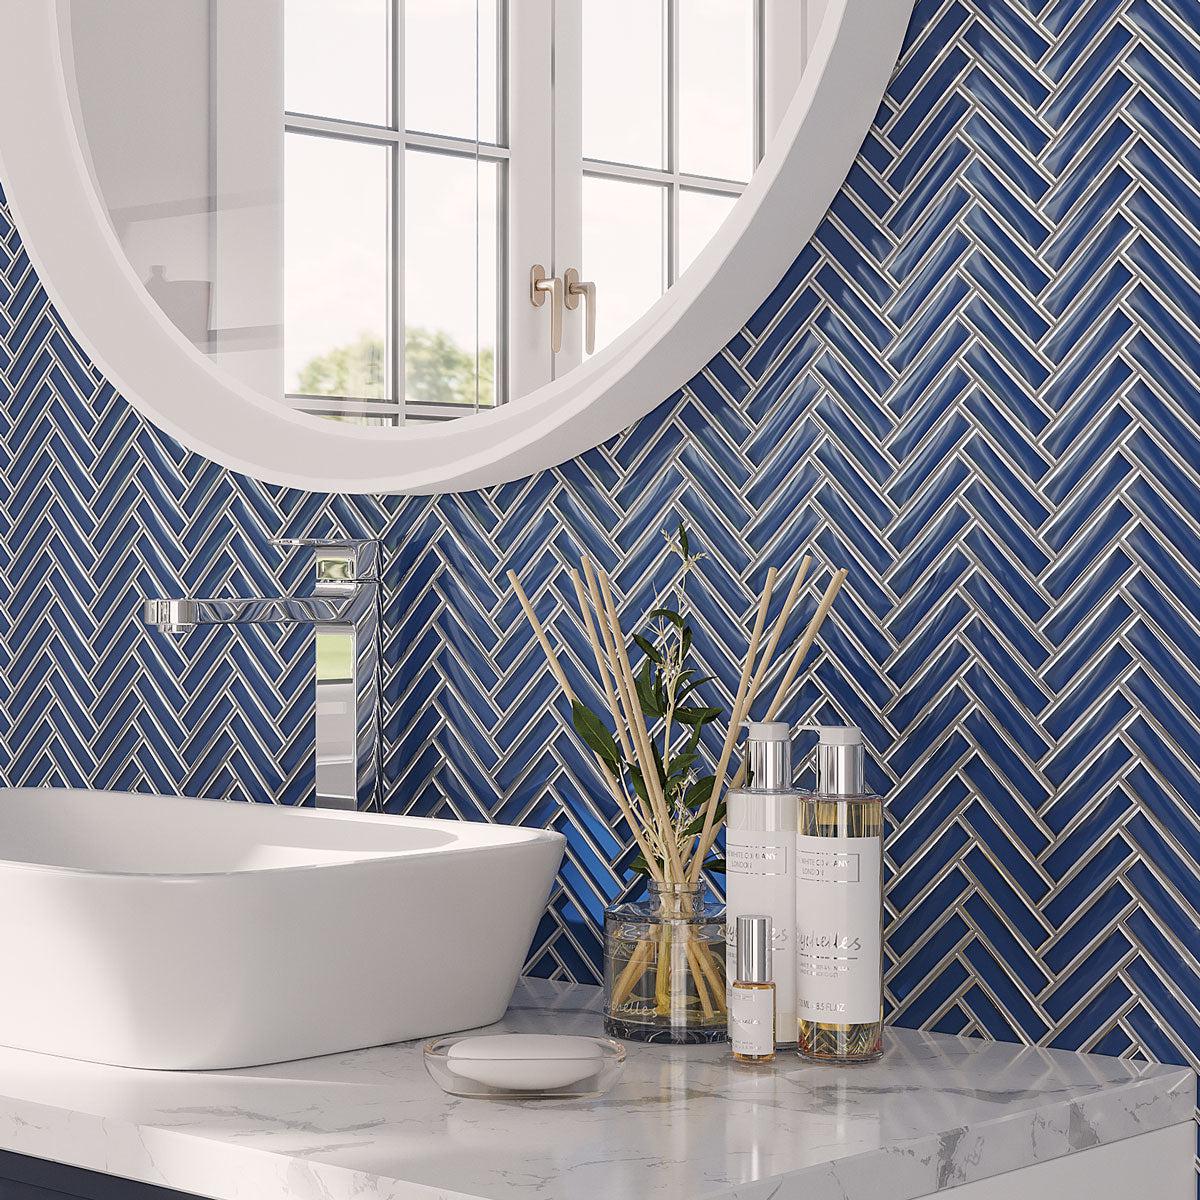 Blue Glass and Chrome herringbone mosaic tile bathroom backsplash